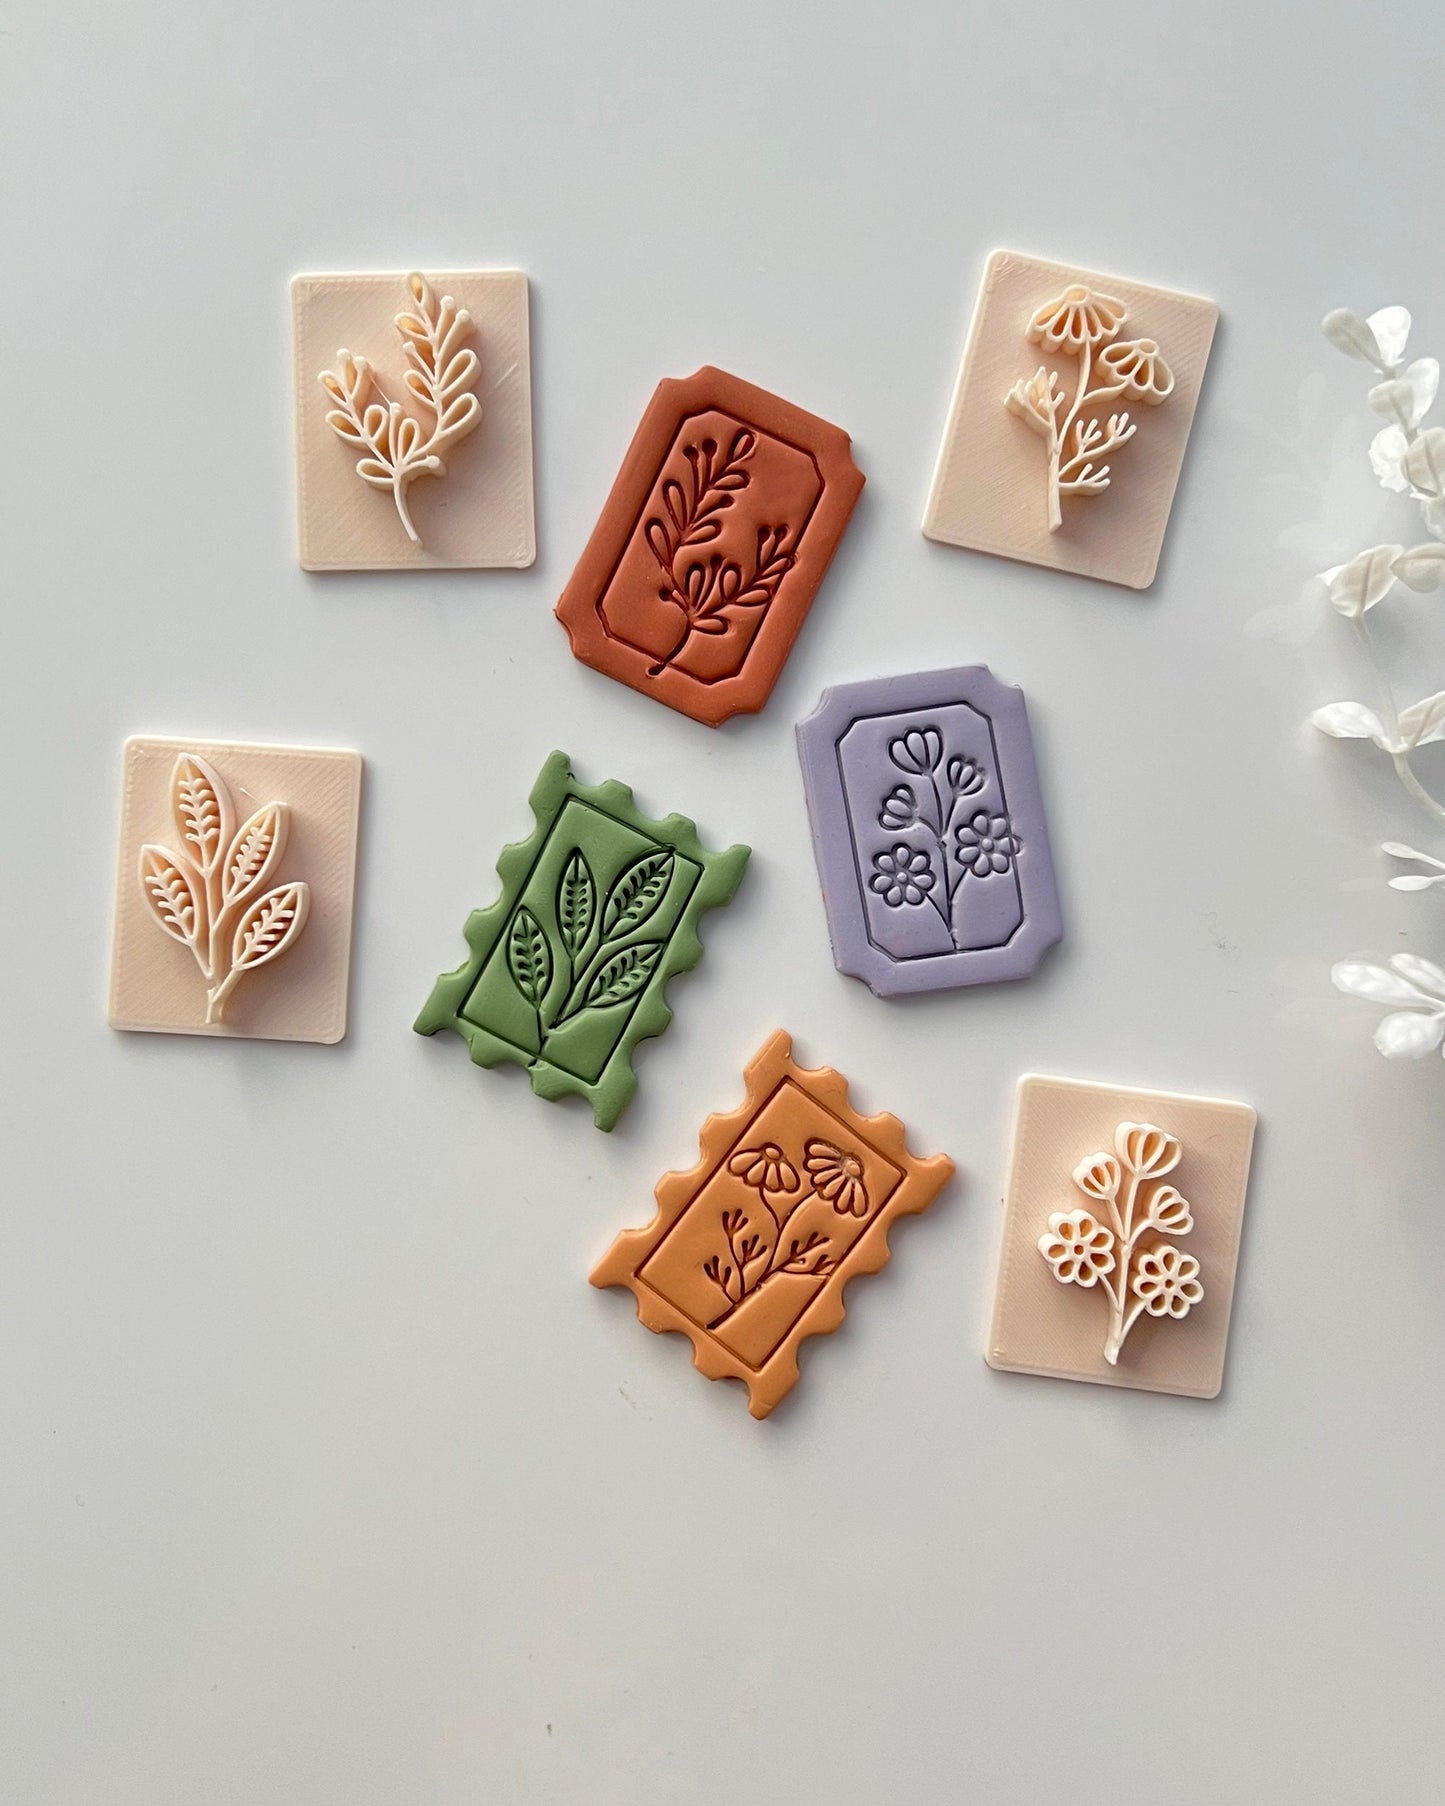 Polymer clay stamps ideas. #polymer #clay #stamps i#nspiration #flower  #techniques